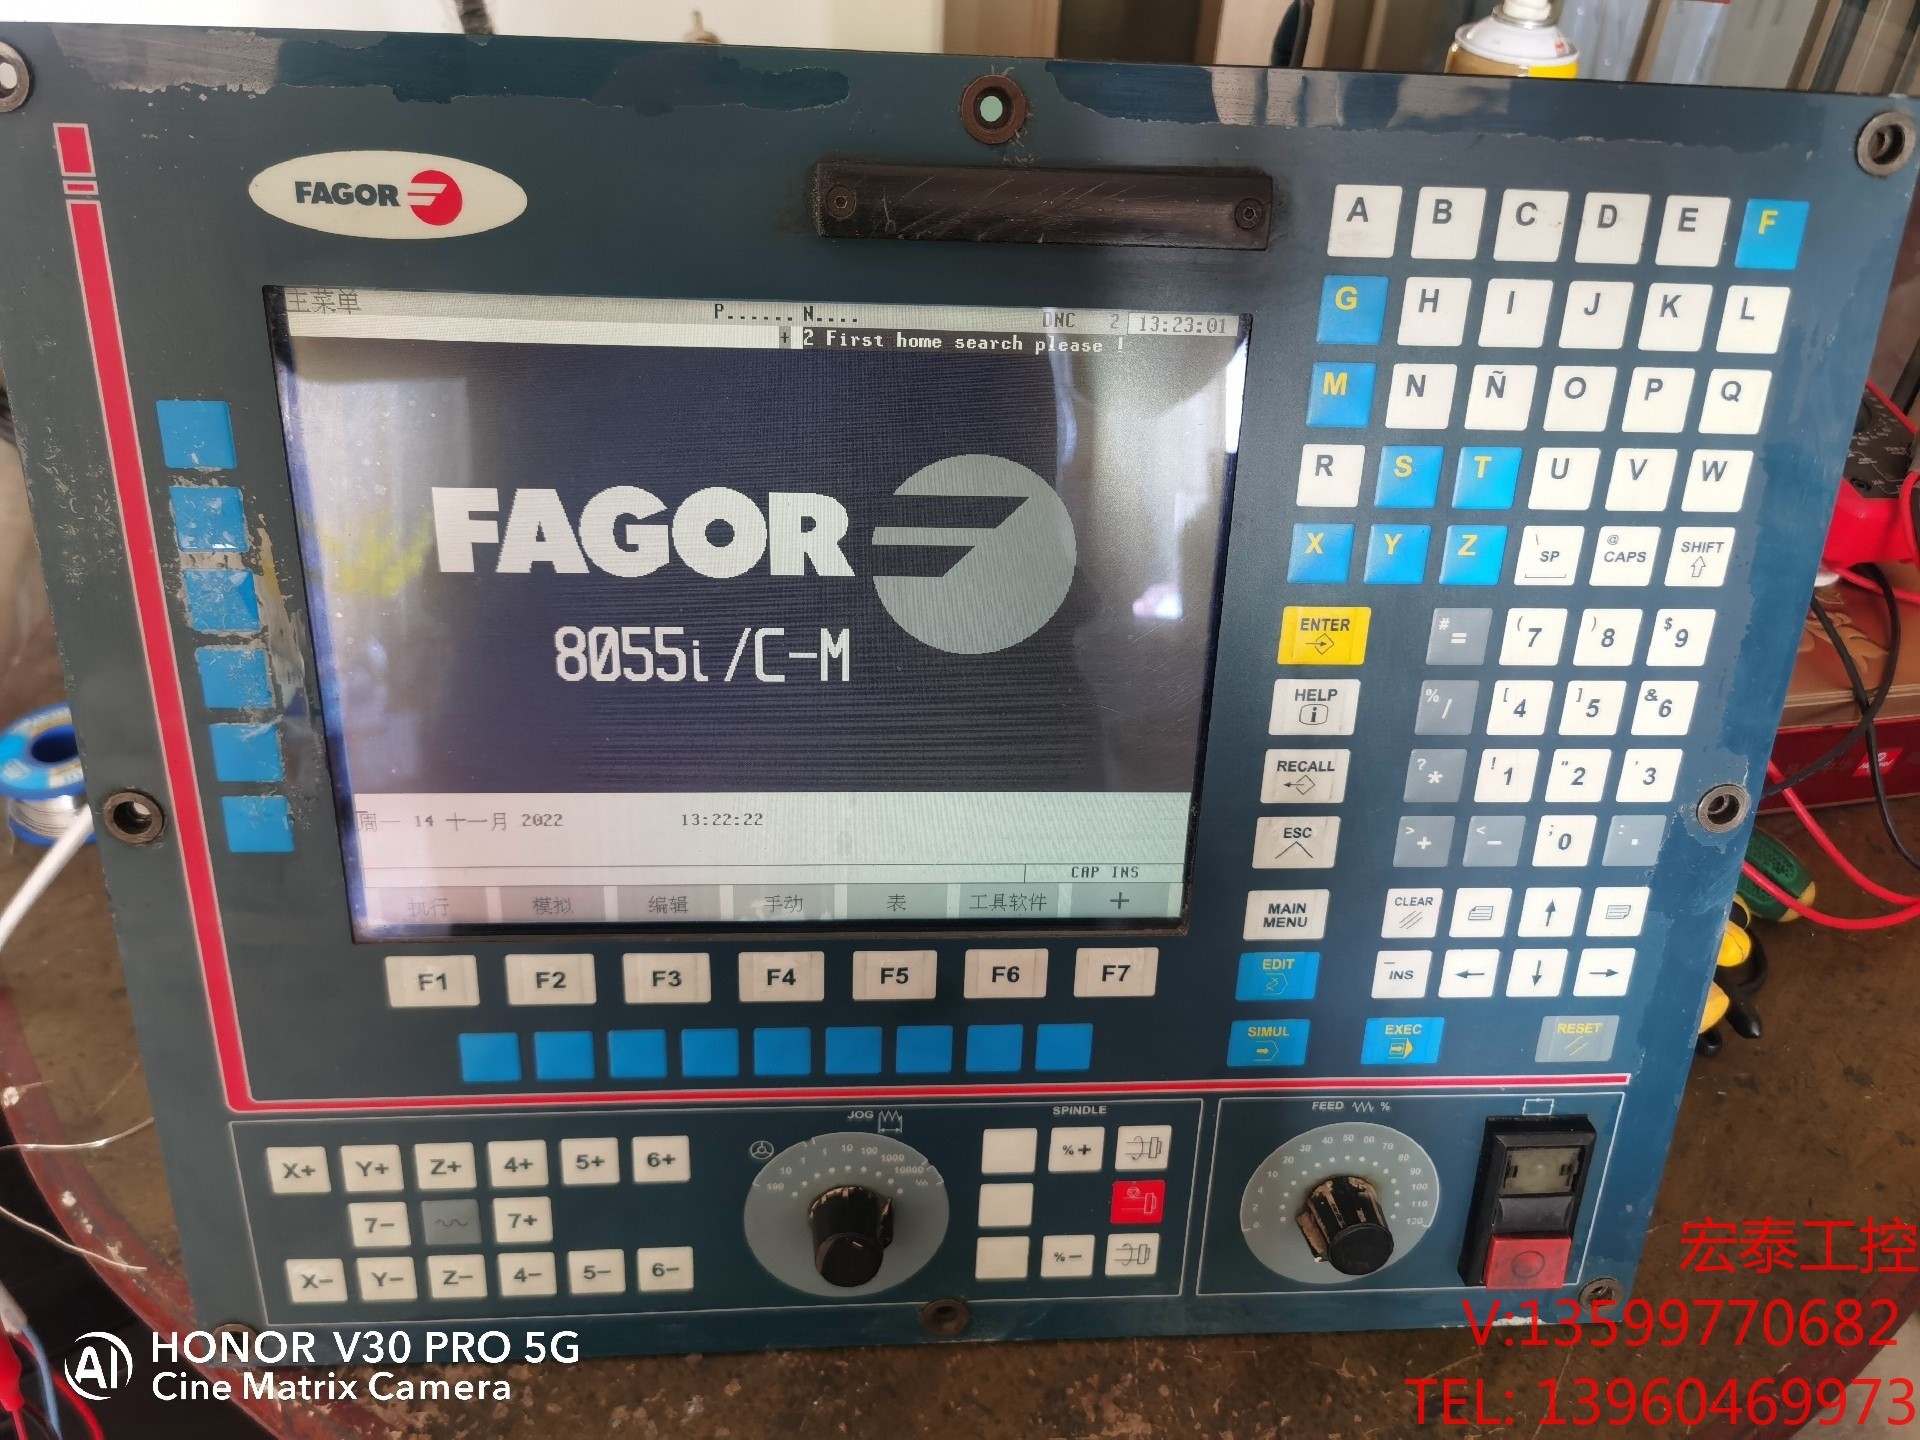 法格8055i/C高速精雕机系统， 电子元器件市场 其它元器件 原图主图